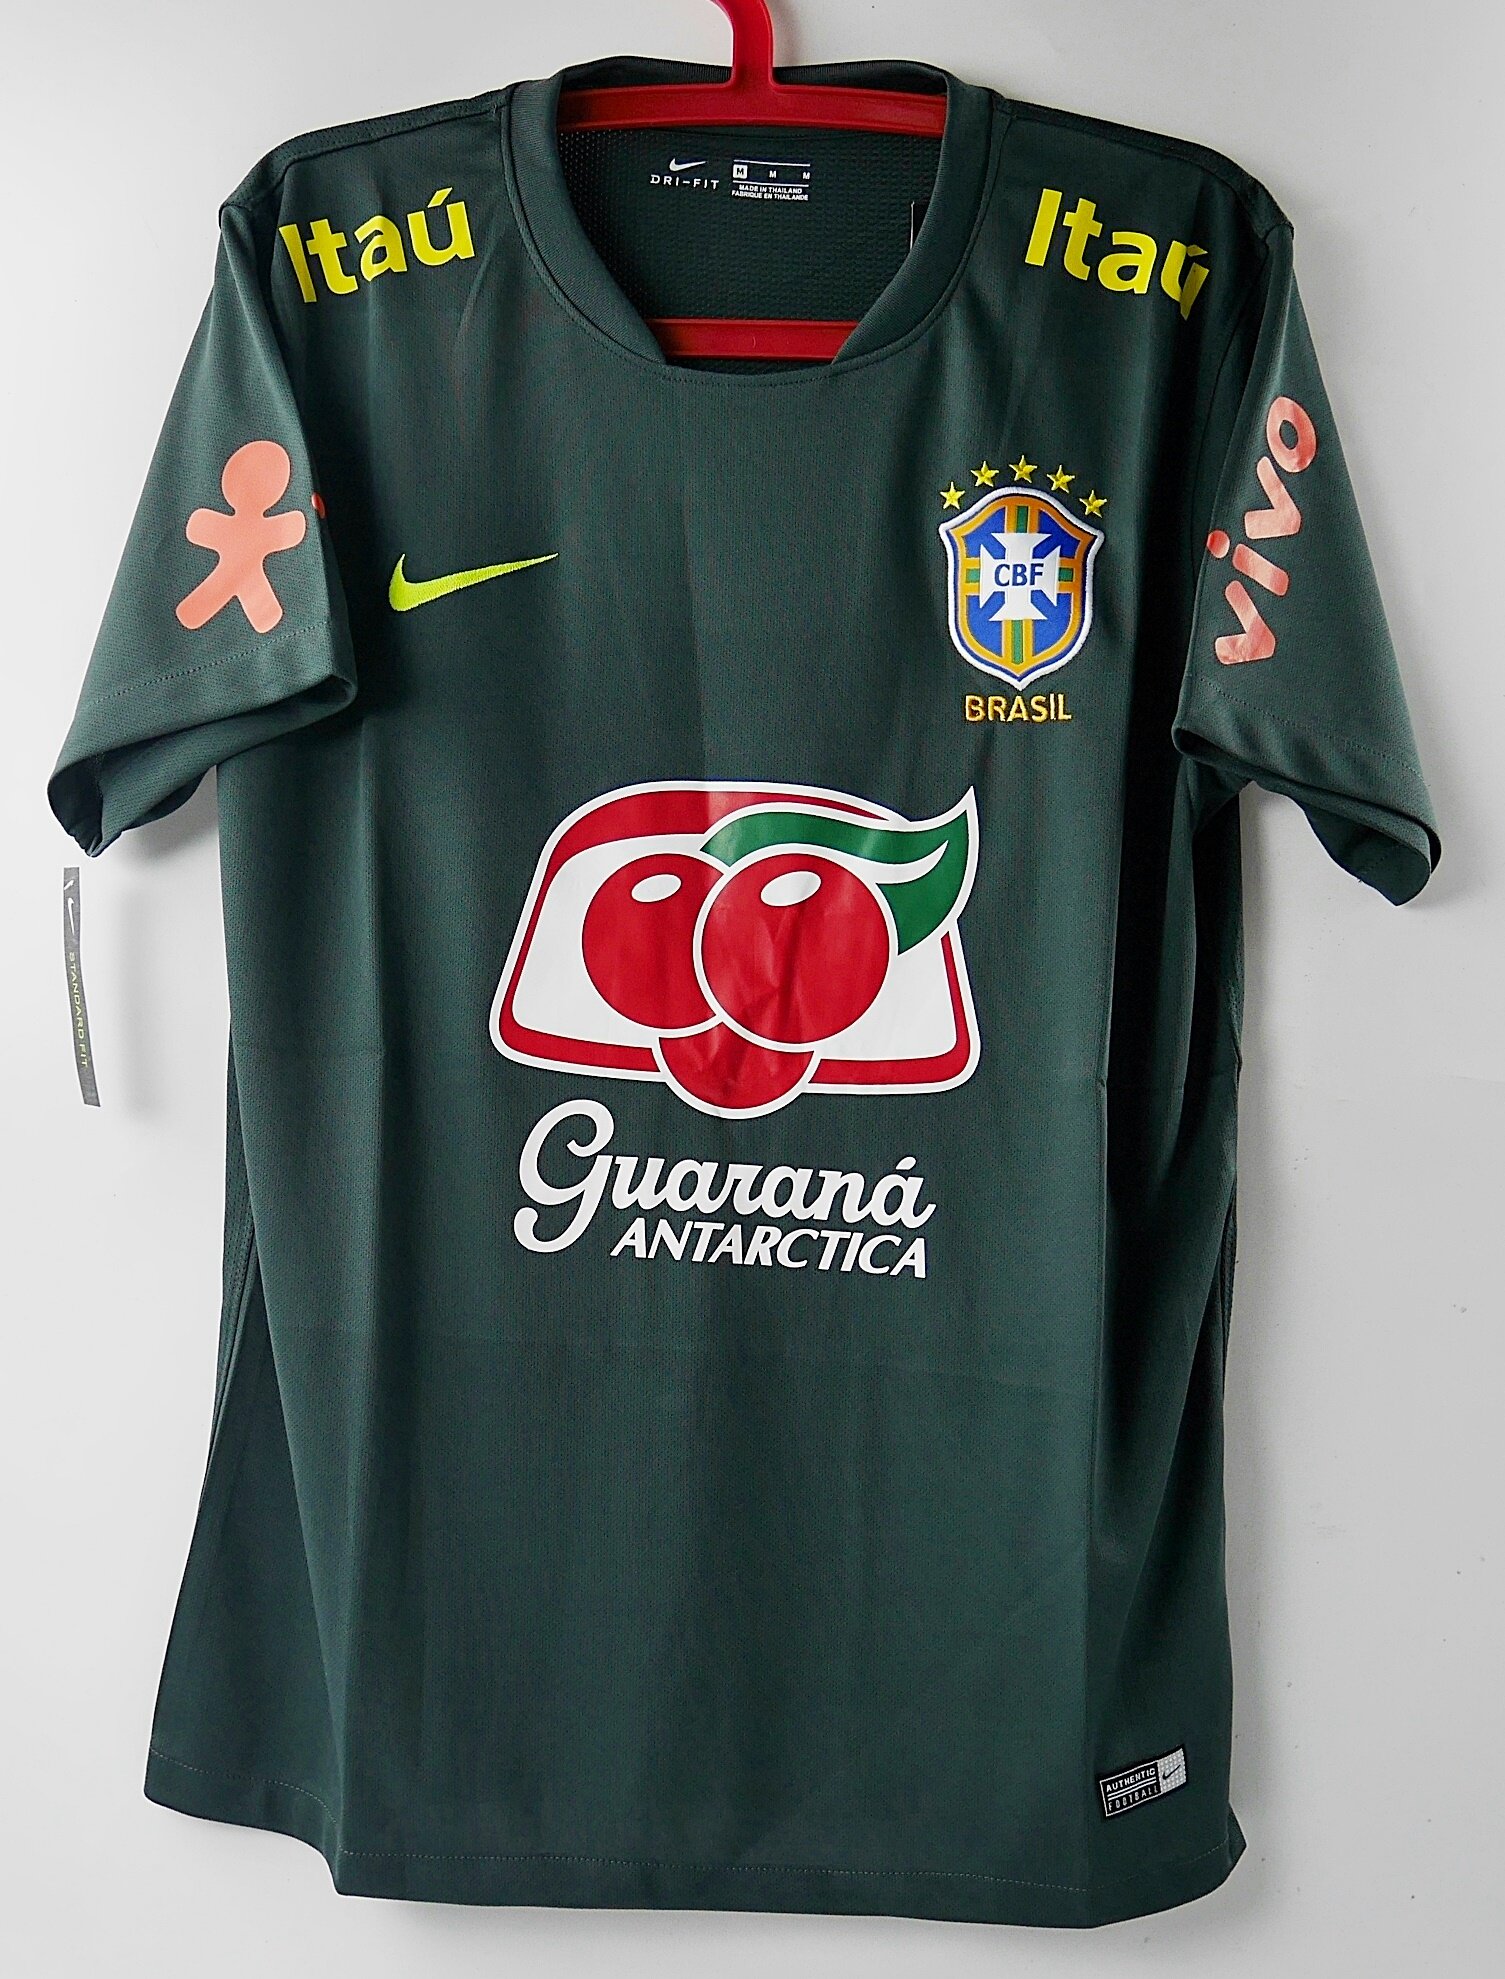 BRAZIL TRAINING KIT 2018-2019 FOOTBALL SHIRT SOCCER JERSEY เสื้อบอล เสื้อฟุตบอล บราซิล เสื้อซ้อม เทรนนิ่ง